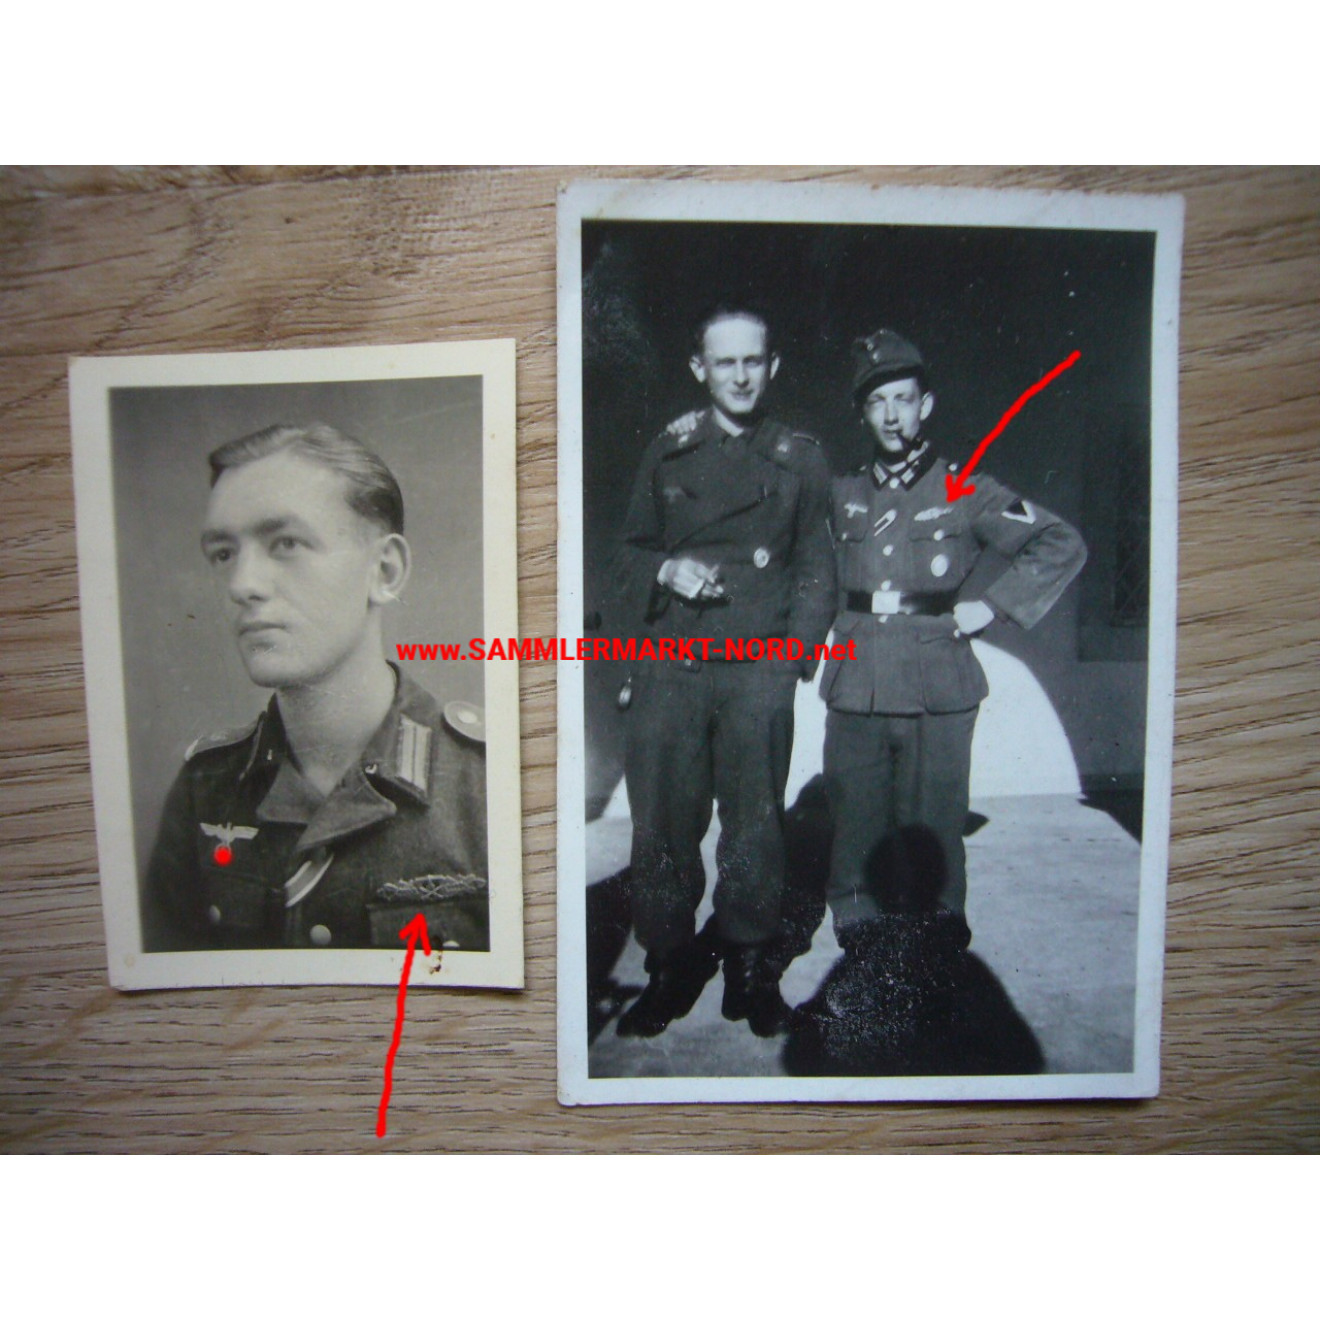 2 x Foto Grenadier Regiment 118 - Soldat mit Nahkampfspange